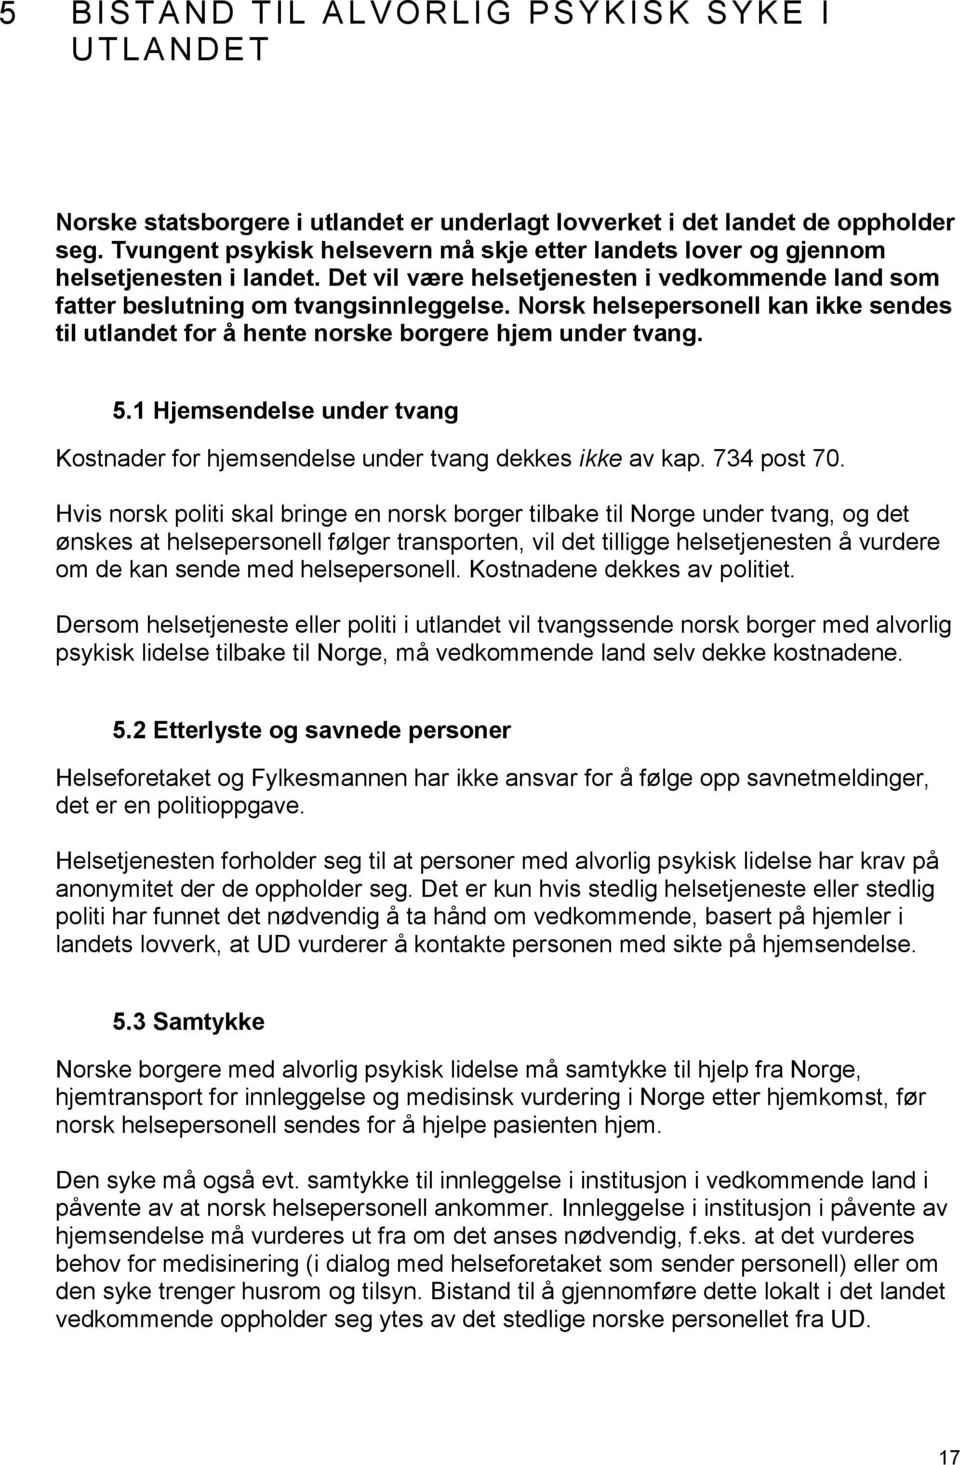 Norsk helsepersonell kan ikke sendes til utlandet for å hente norske borgere hjem under tvang. 5.1 Hjemsendelse under tvang Kostnader for hjemsendelse under tvang dekkes ikke av kap. 734 post 70.